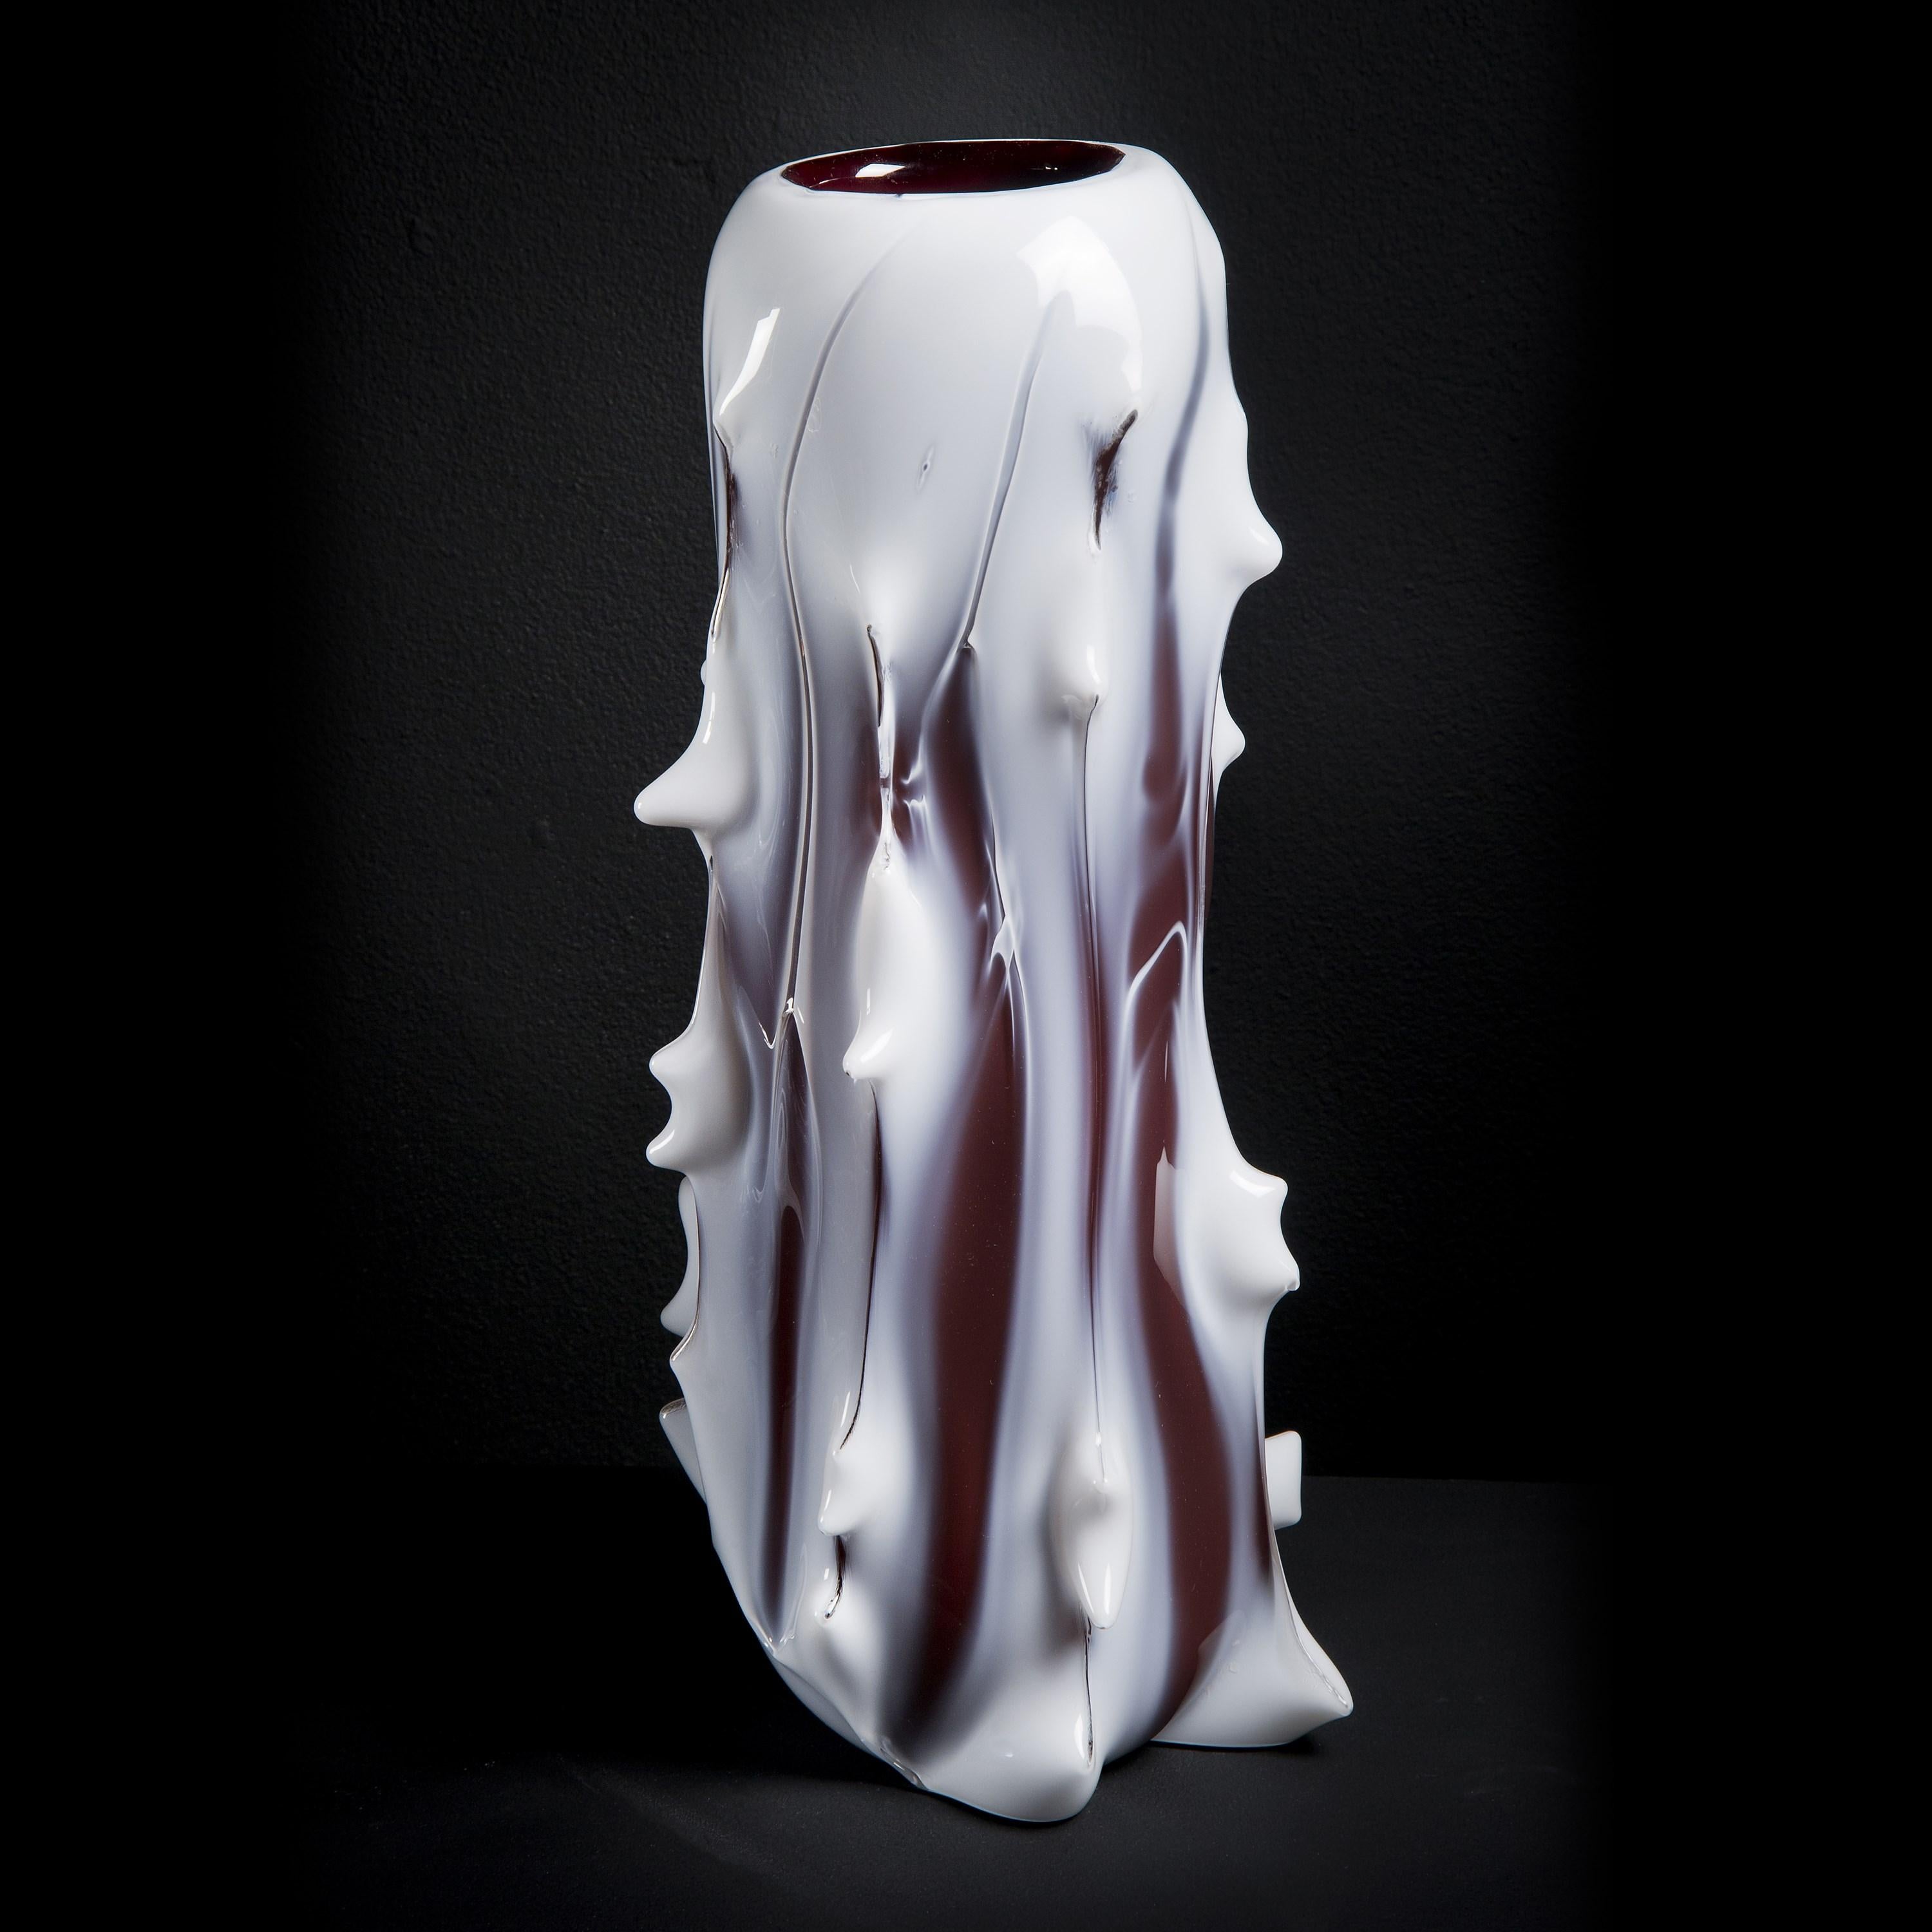 Spinal I est un vase en verre blanc et aubergine inspiré d'un arbre, réalisé en édition limitée (49 exemplaires) par l'artiste suédois Mårten Medbo.

Parmi ses œuvres, on trouve de nombreux exemples de pièces qui ressemblent à des structures